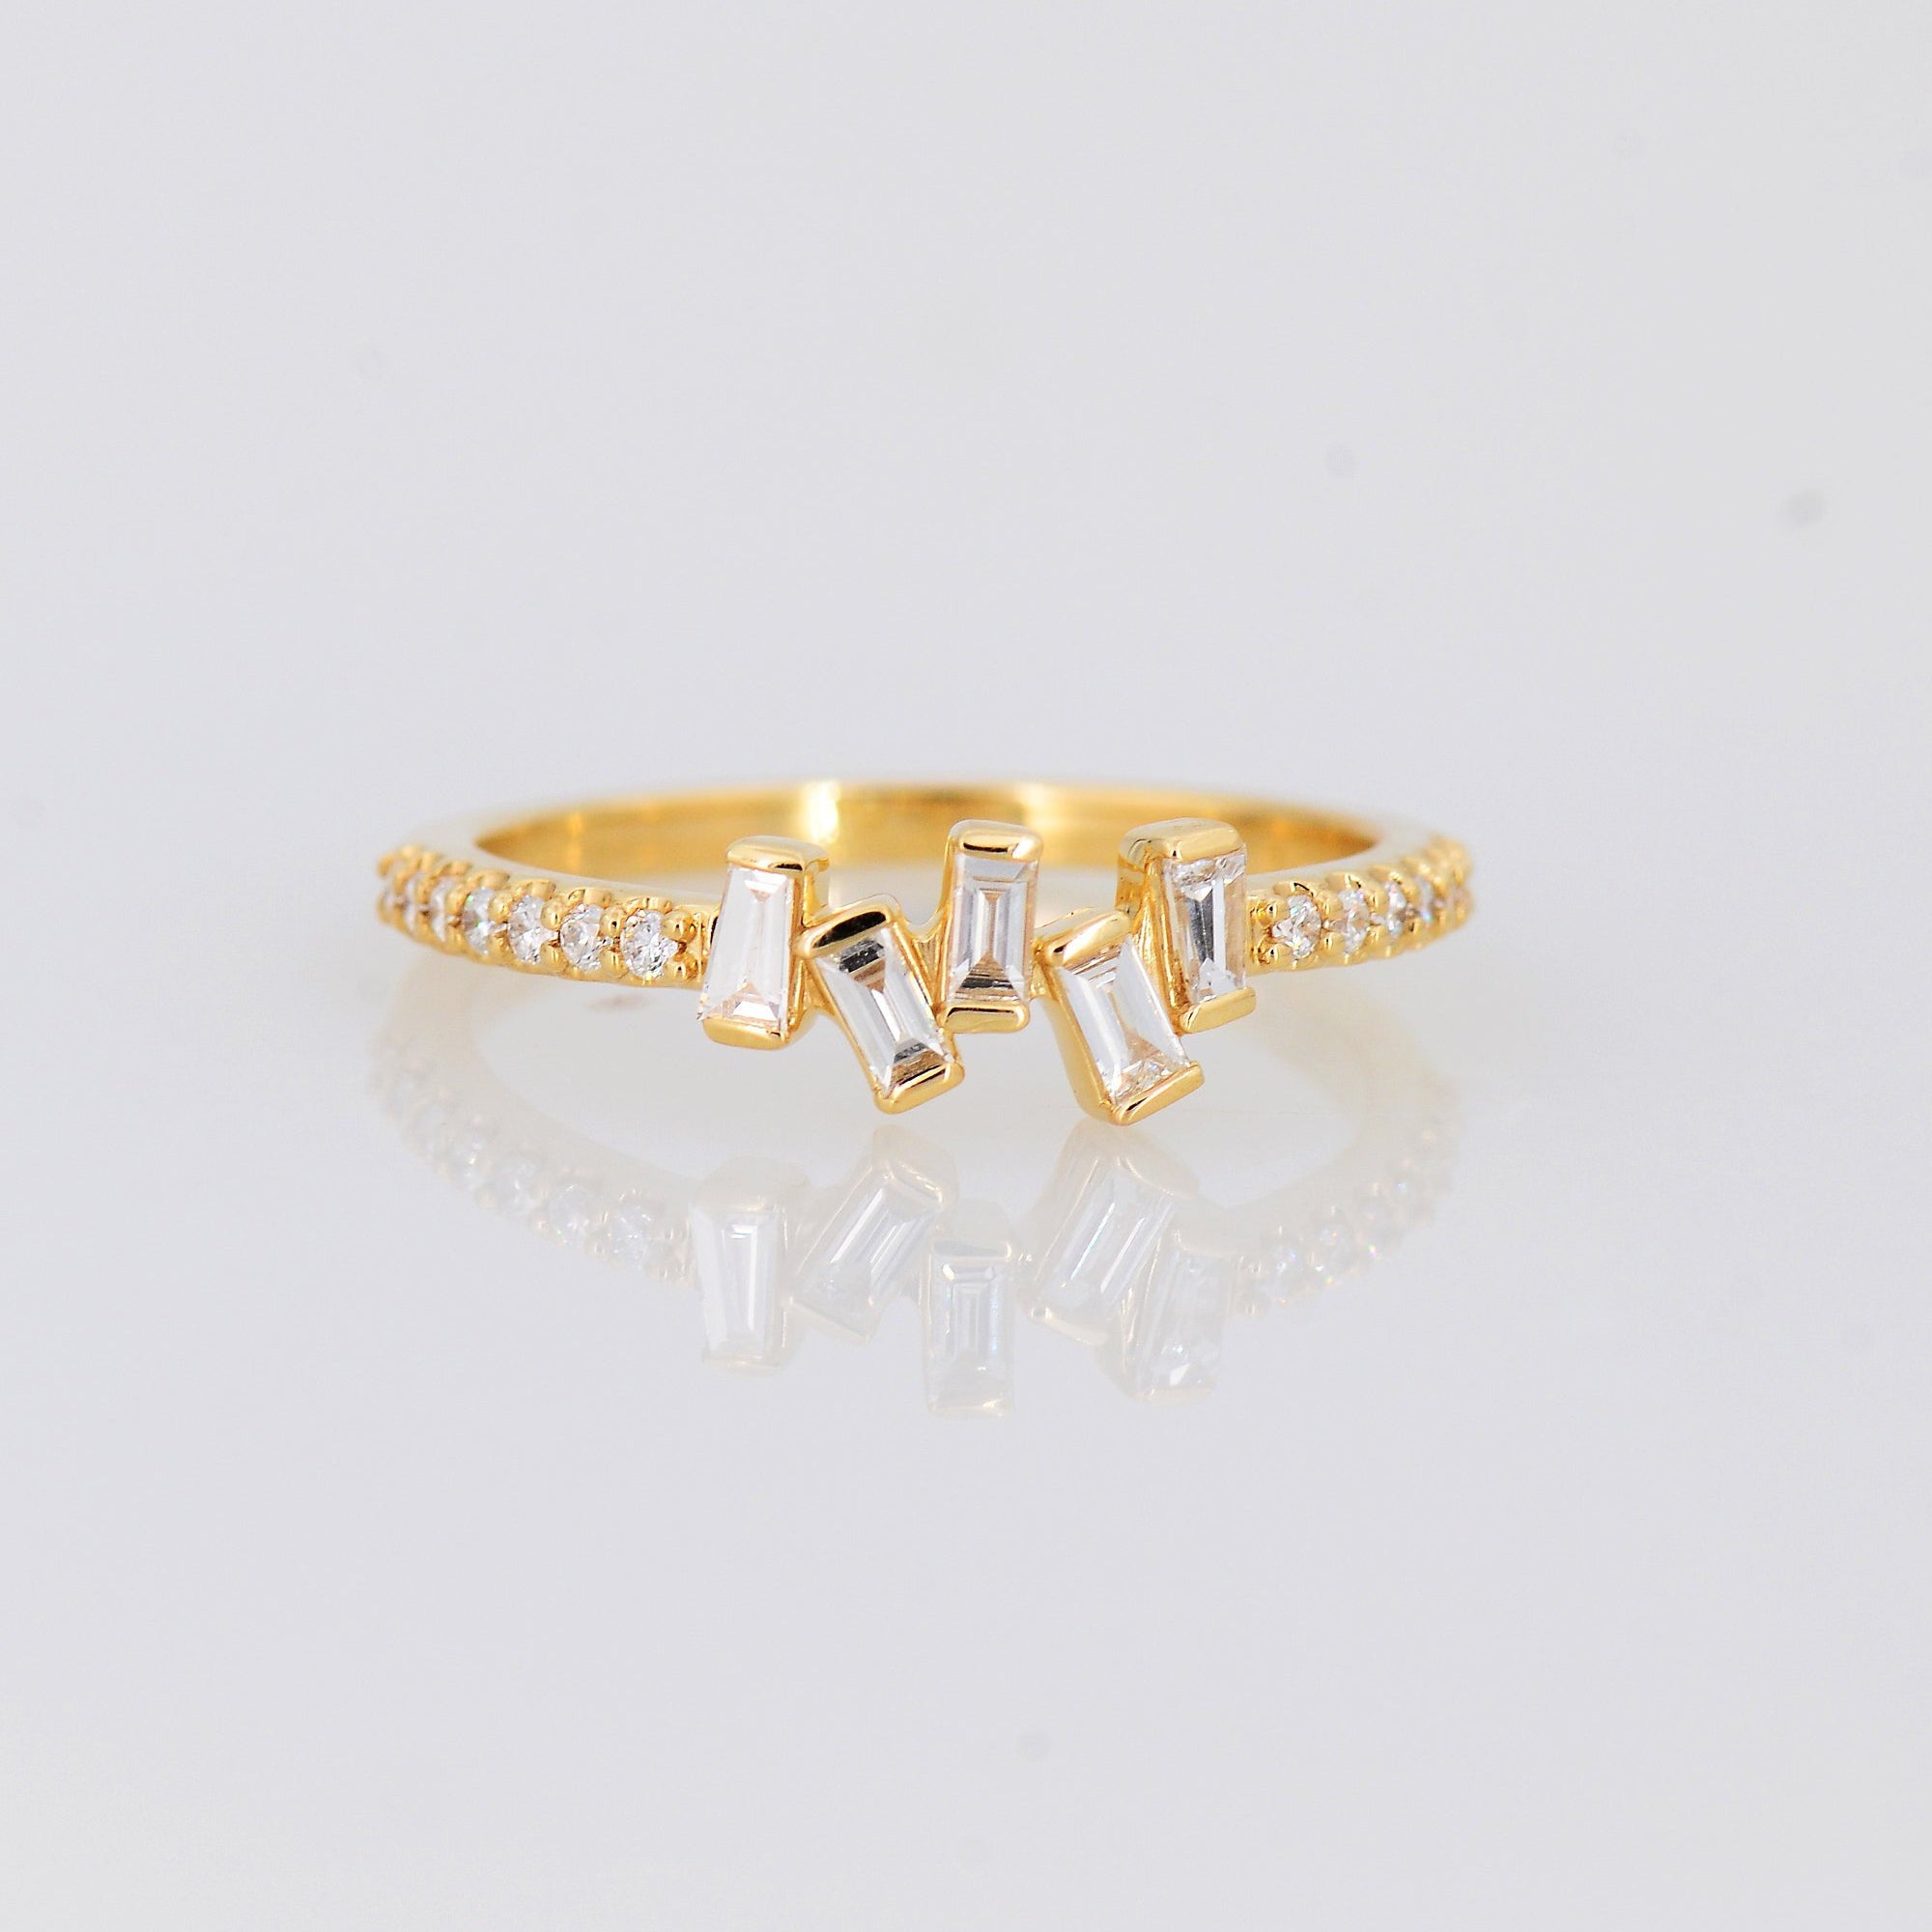 Delicate Diamond Ring, Baguette Diamond Ring